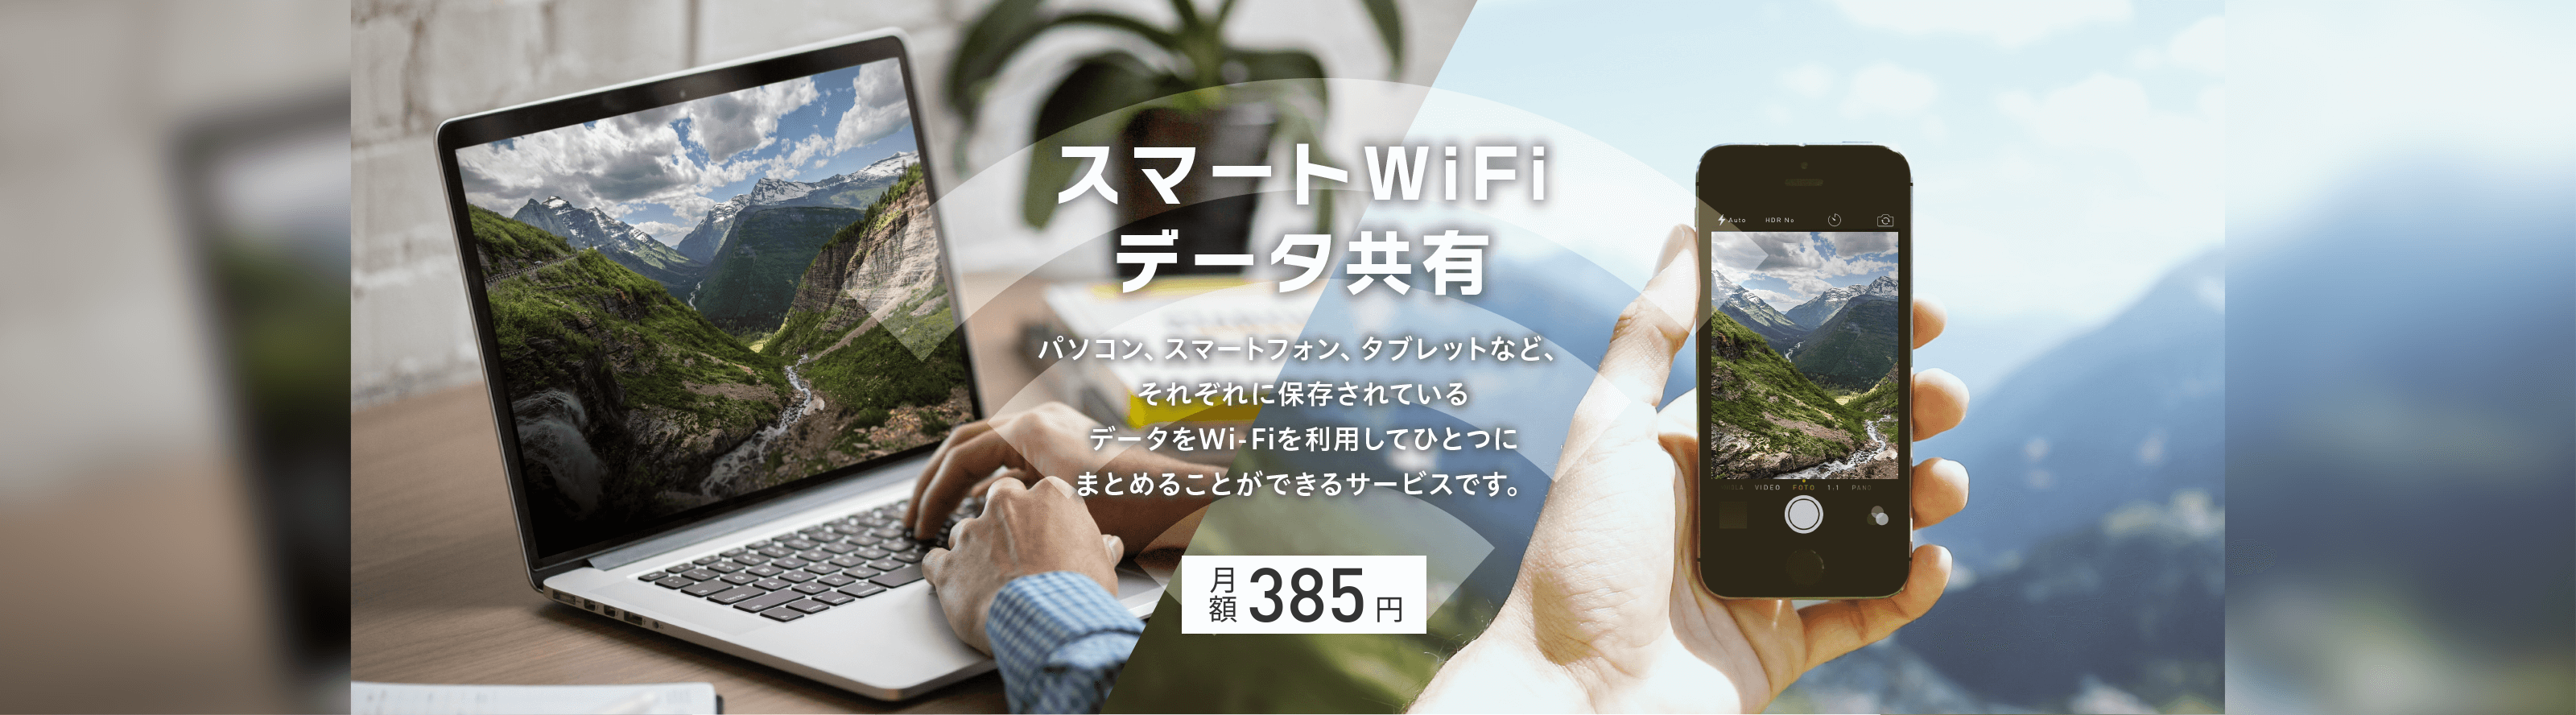 スマートWiFiデータ共有 月額385円。パソコン、スマートフォン、タブレットなど、それぞれに保存されているデータをWi-Fiを利用して1つにまとめることができるサービスです。